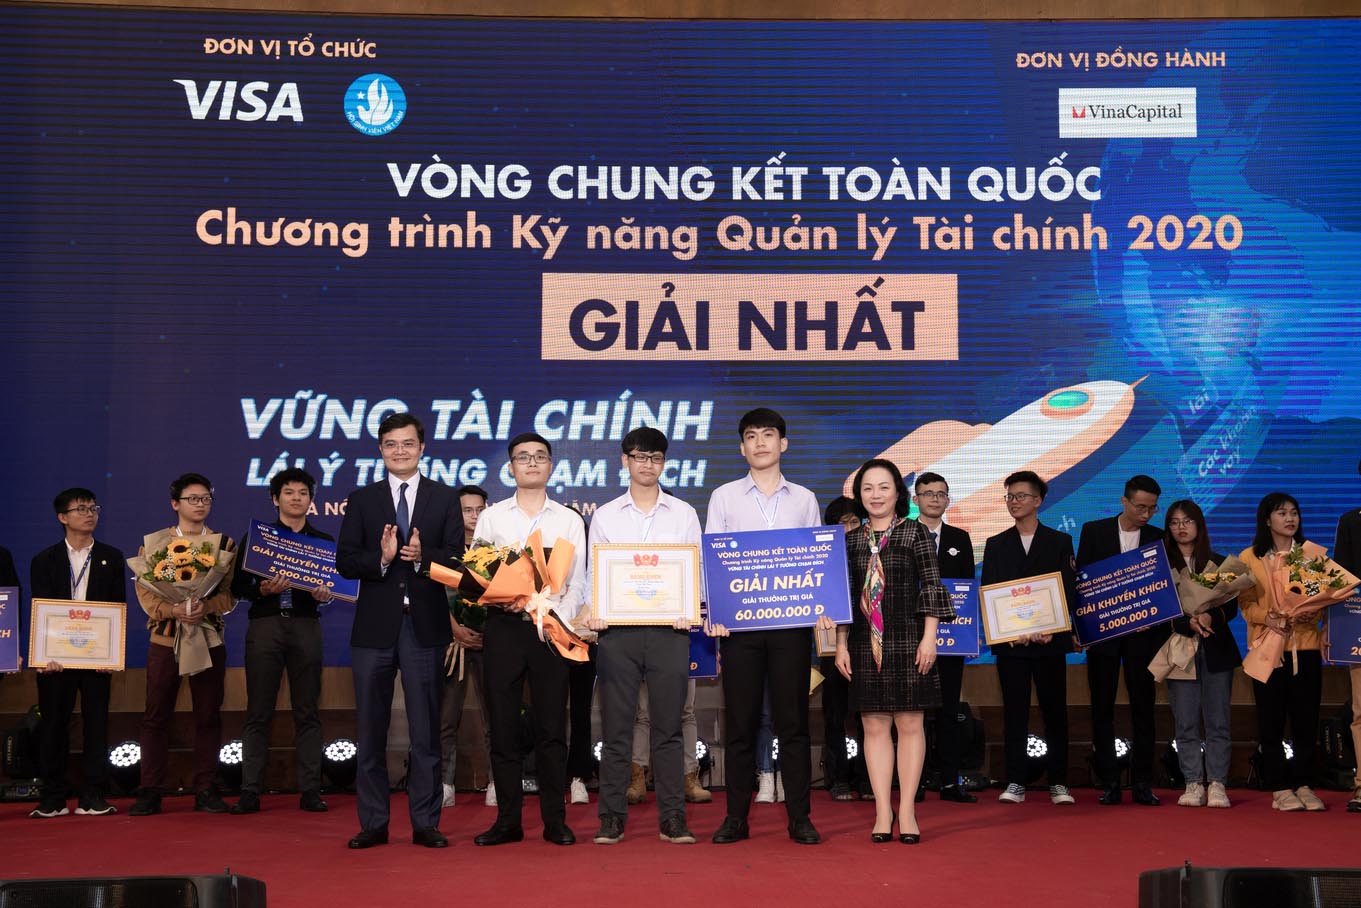 Các nhà khởi nghiệp trẻ tiếp đất ngoạn mục trong đêm chung kết chương trình Kỹ năng Quản lý Tài chính 2020 của Visa và Trung ương Hội Sinh viên Việt Nam